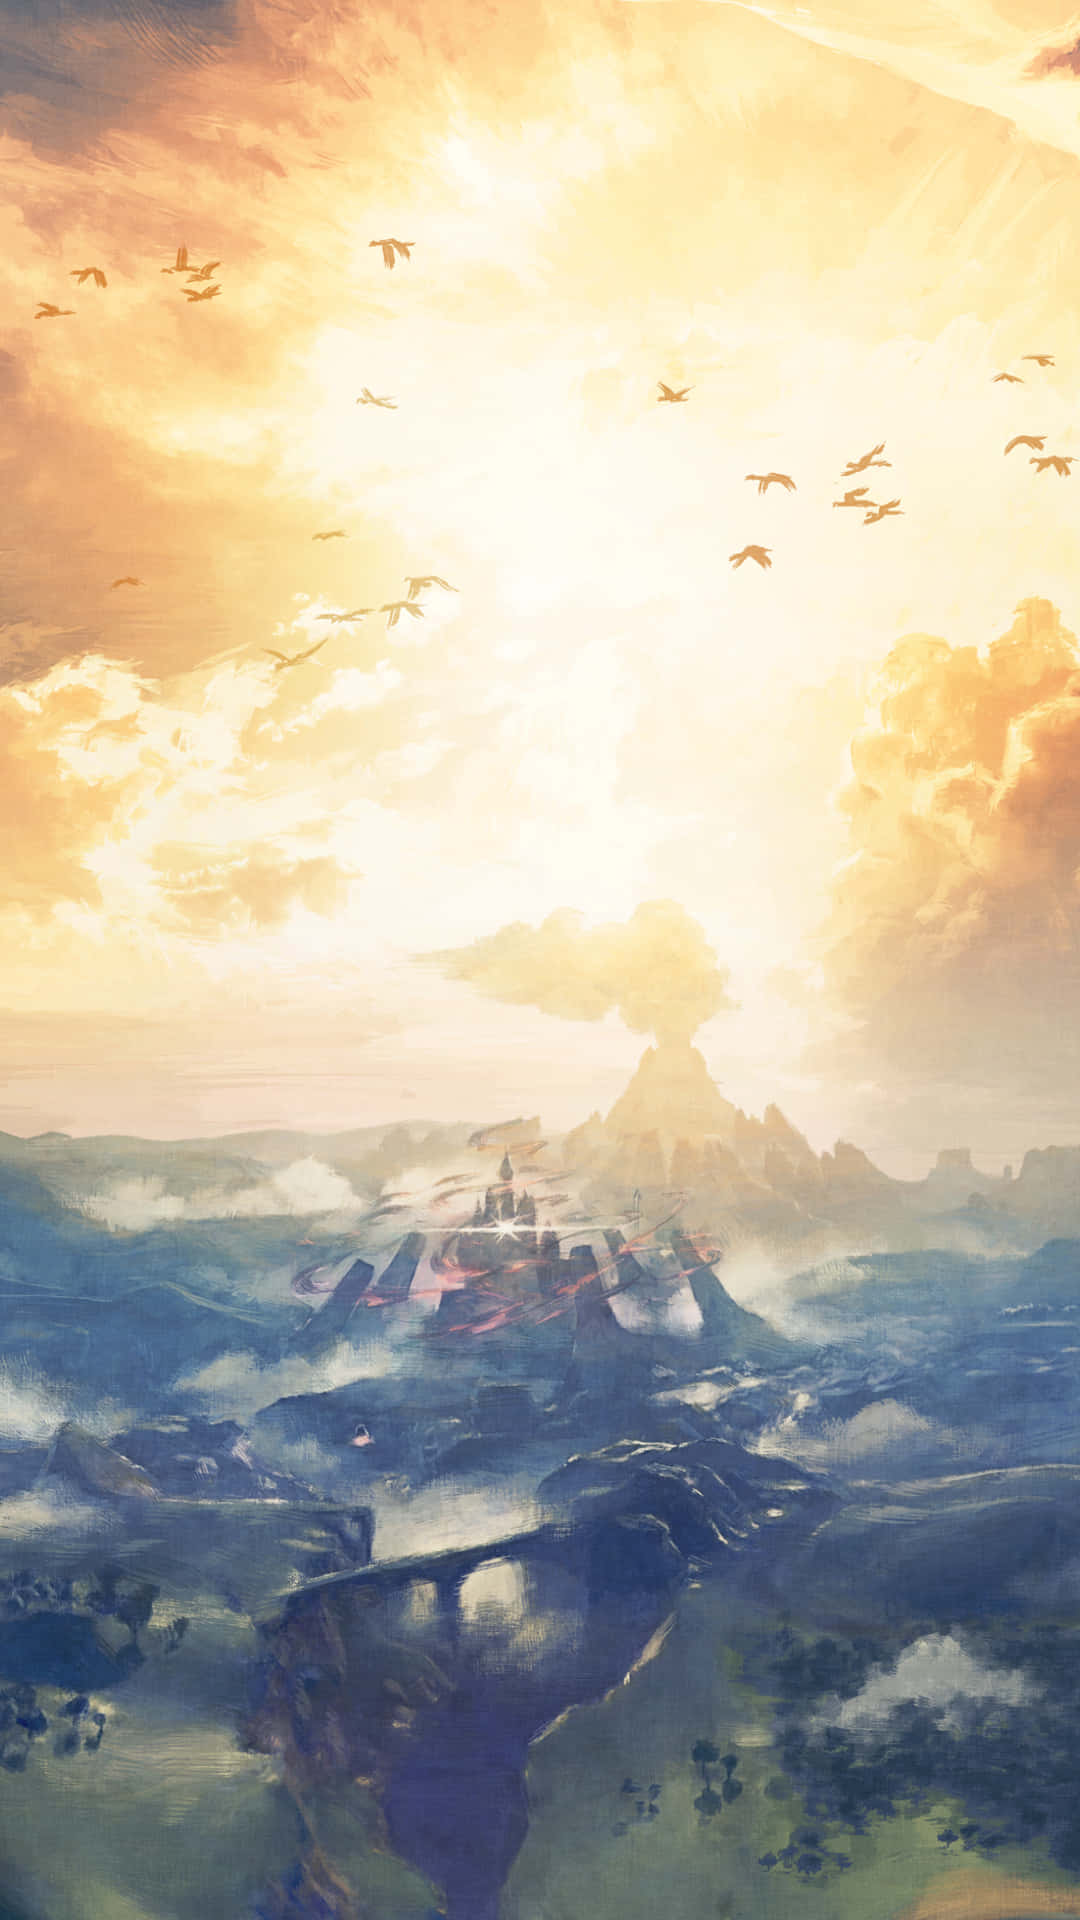 100 The Legend Of Zelda Iphone Wallpapers  Wallpaperscom